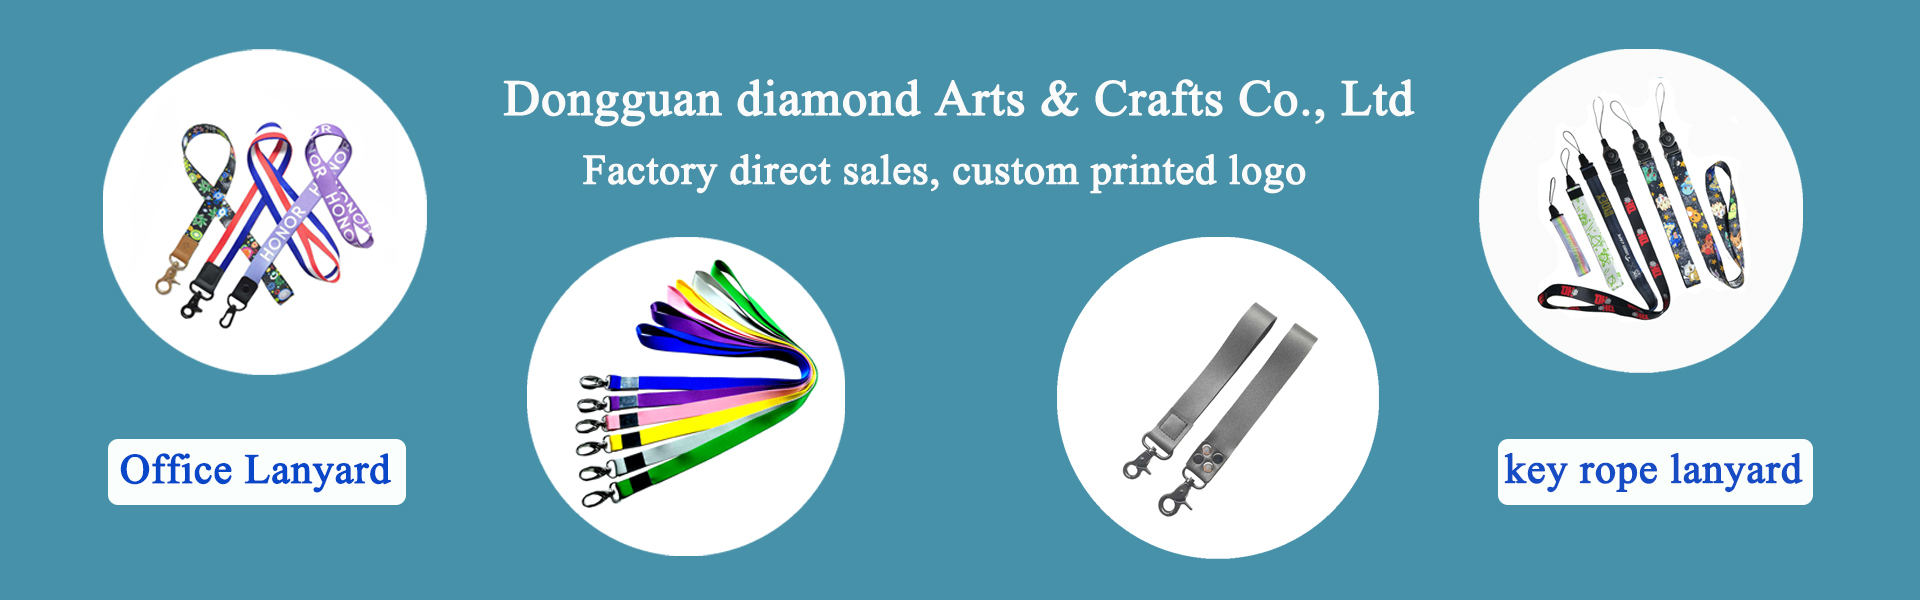 lanyard, kledingtoebehoren, benodigdheden voor gezelschapsdieren,Dongguan diamond Arts & Crafts Co., Ltd